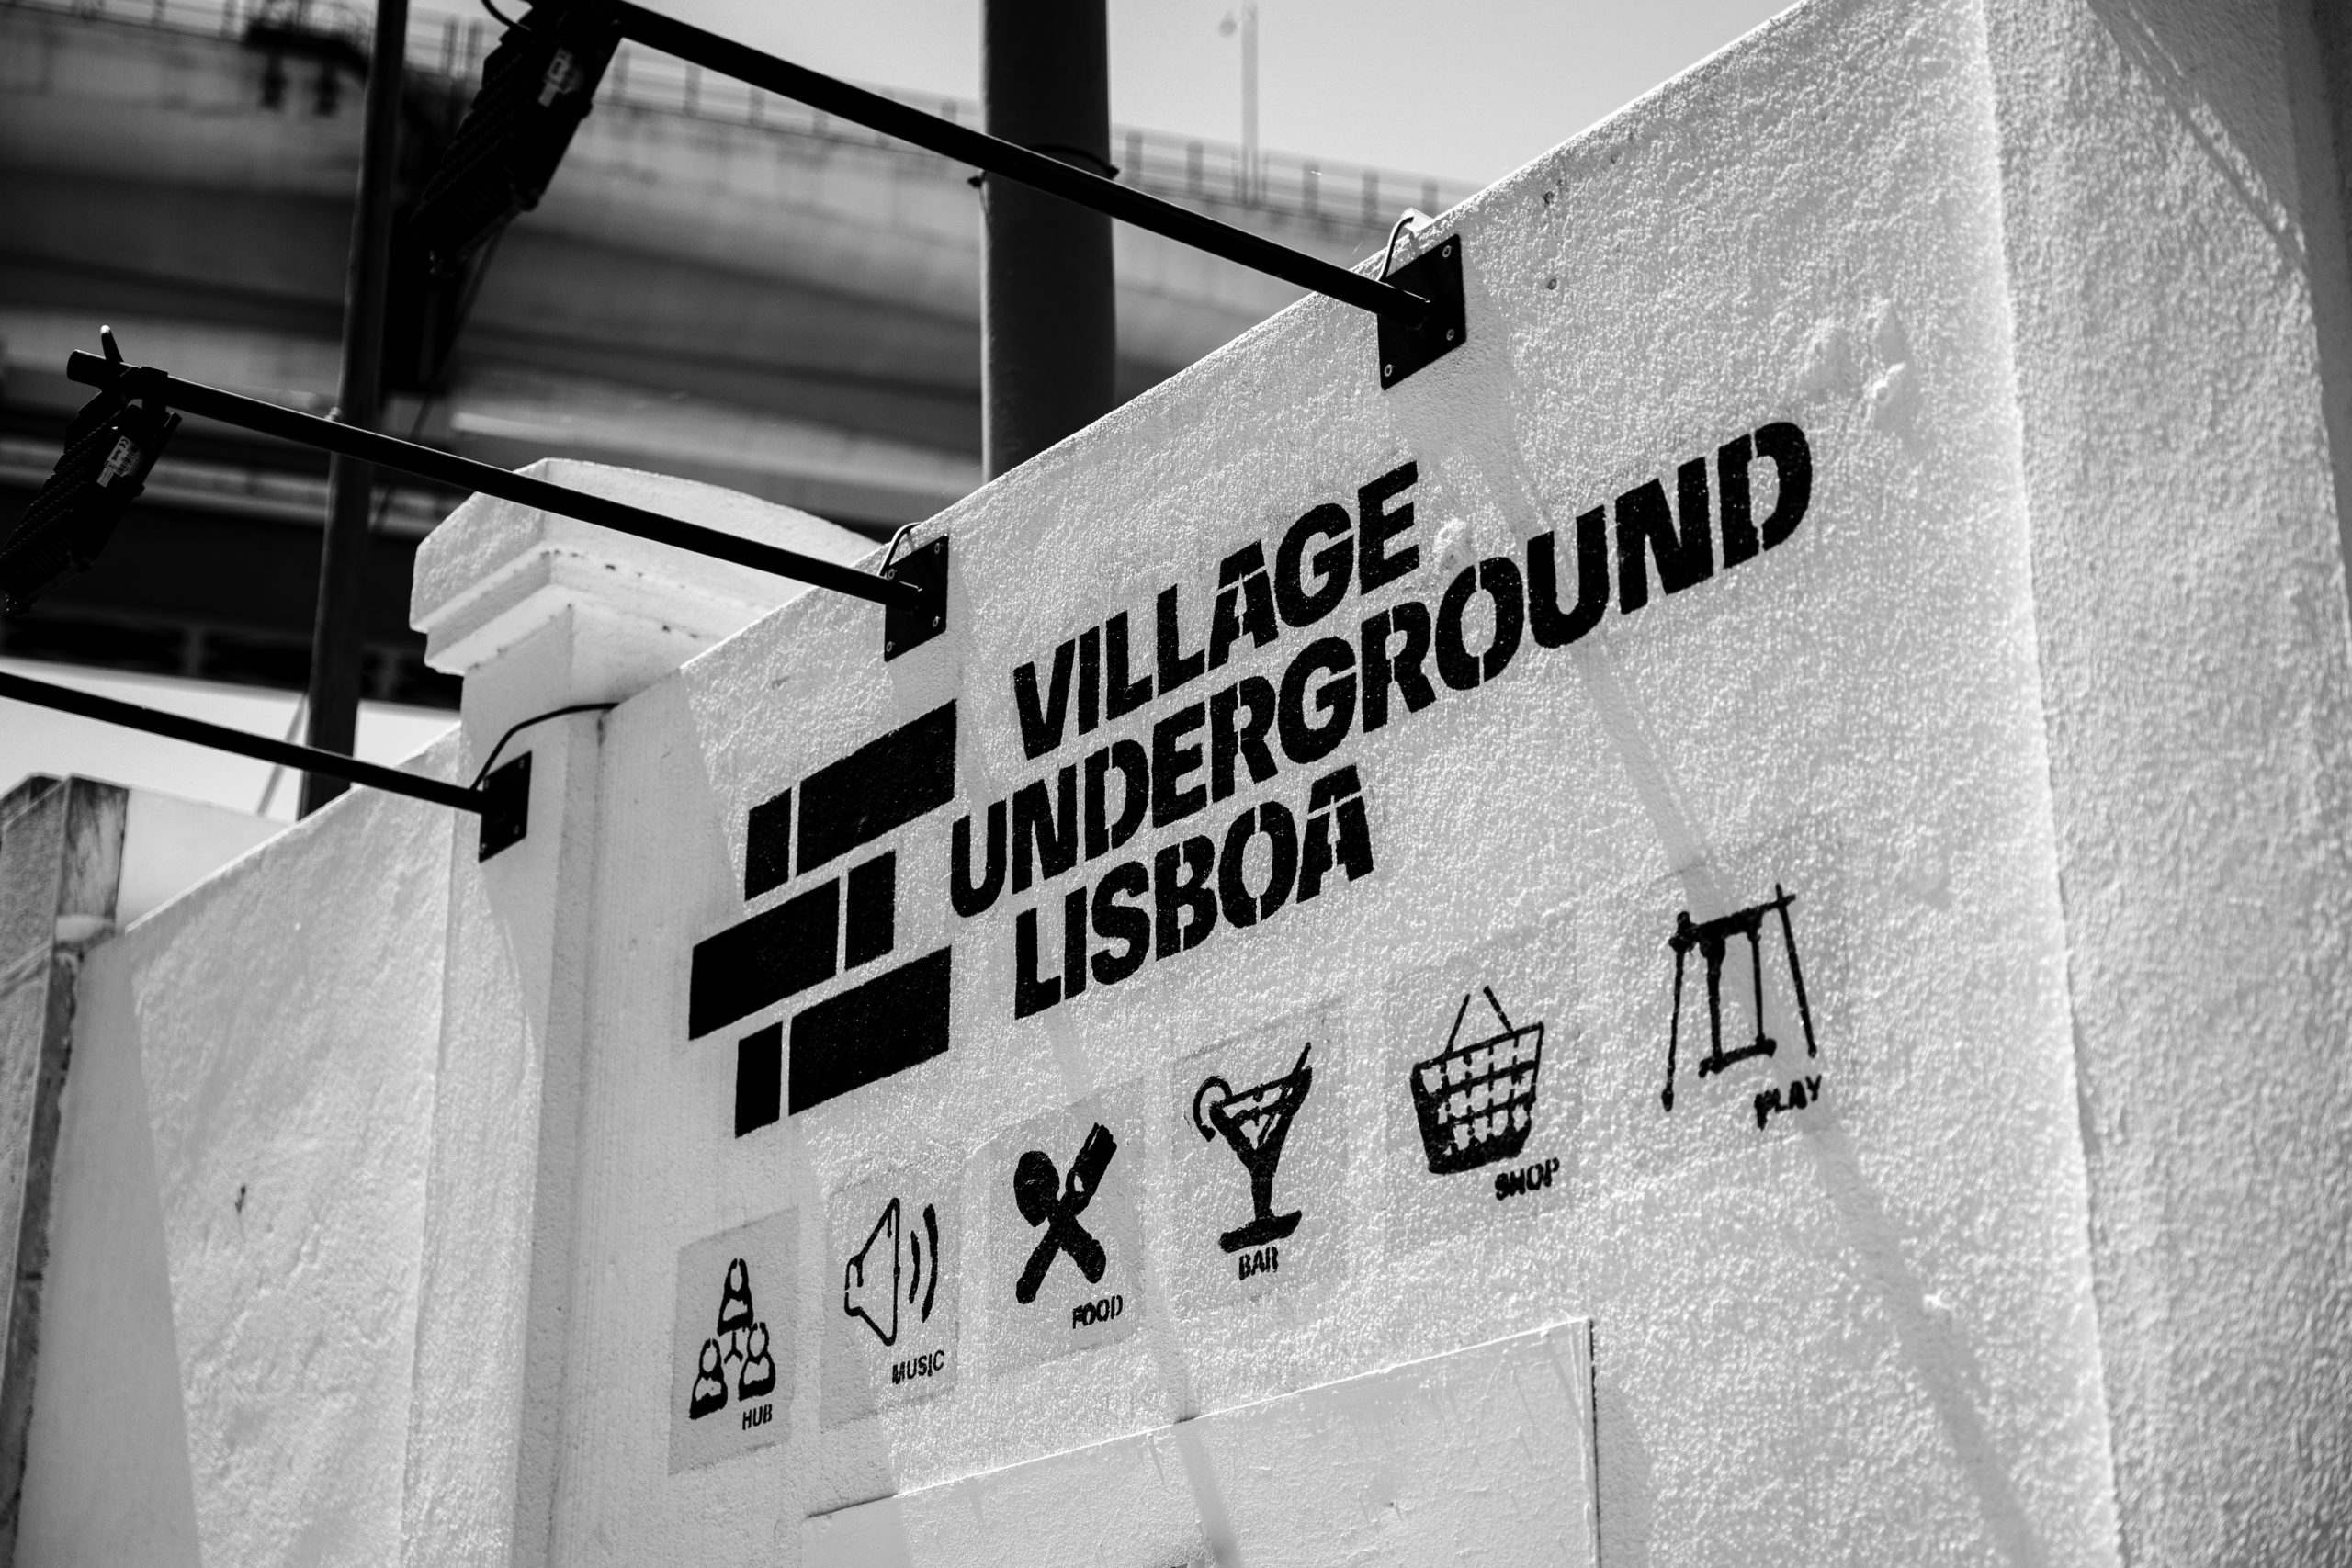 Travels blakeproduction / Lisbonne une ville multiculturelle